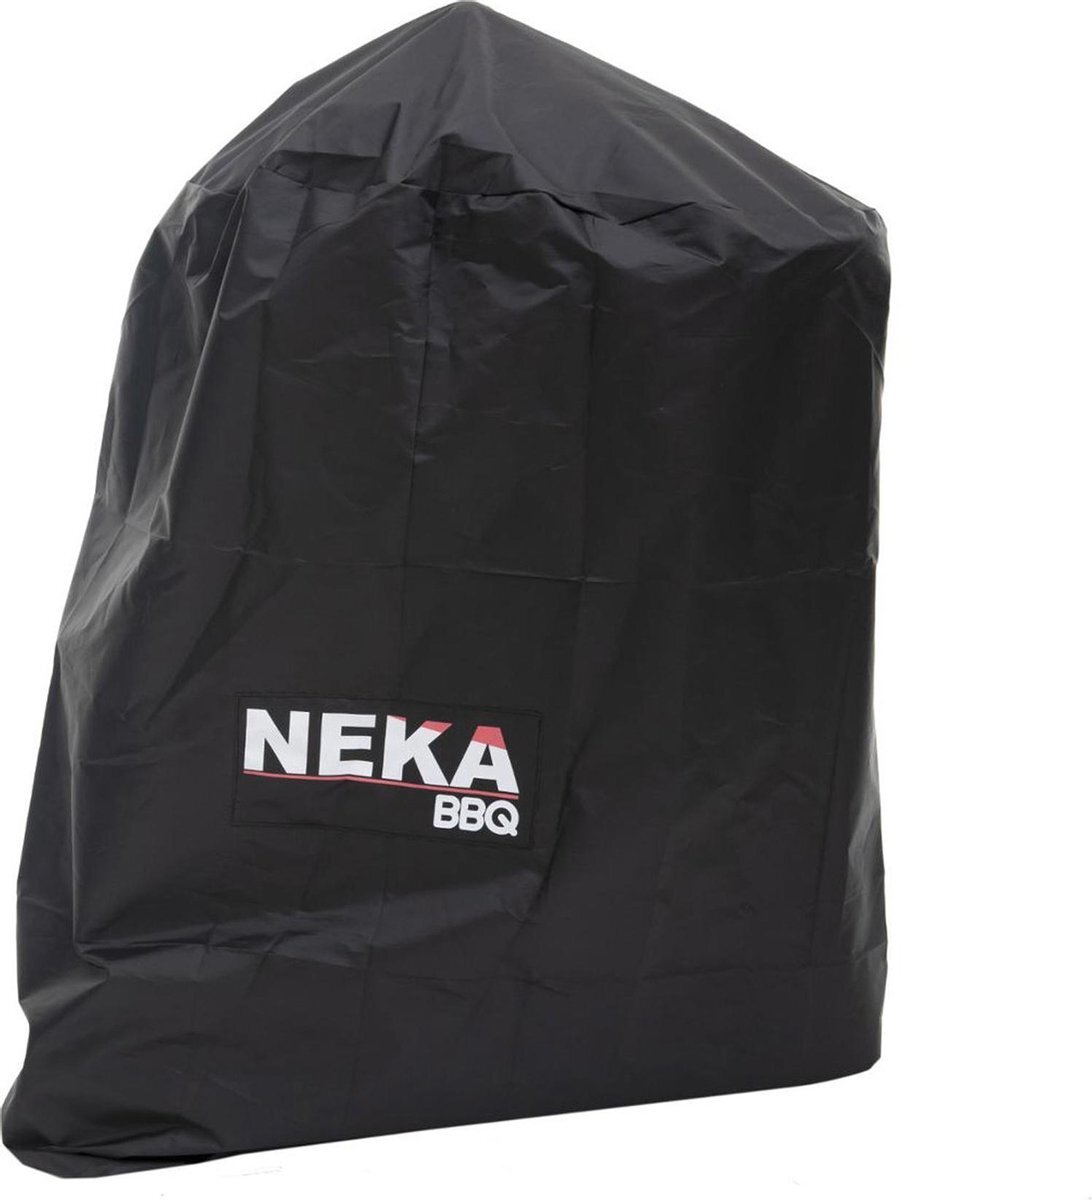 Neka - Barbecuehoes - Beschermhoes voor barbecue - Waterdicht - Zwart - 95 x 62 x 95